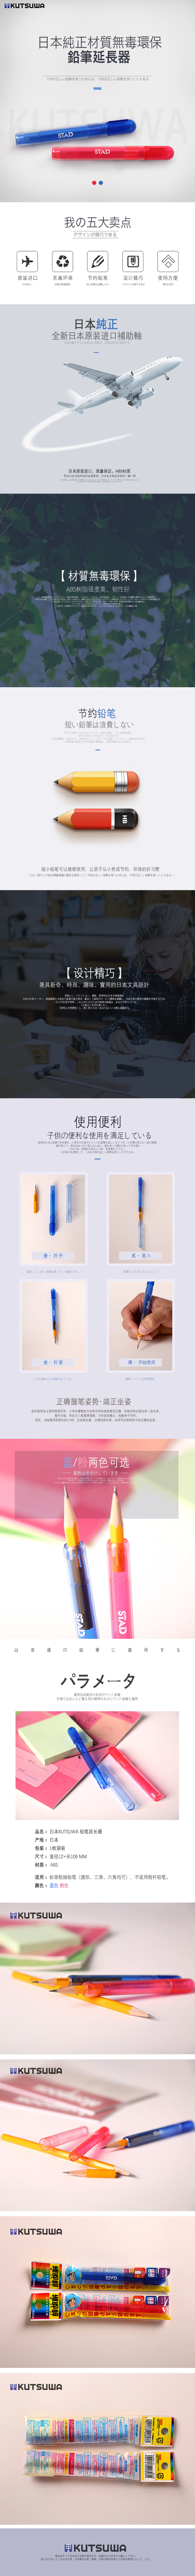 淘宝美工大黑丶KUTSUWA进口日本学生文具用品铅笔延长器详情页日式风格作品